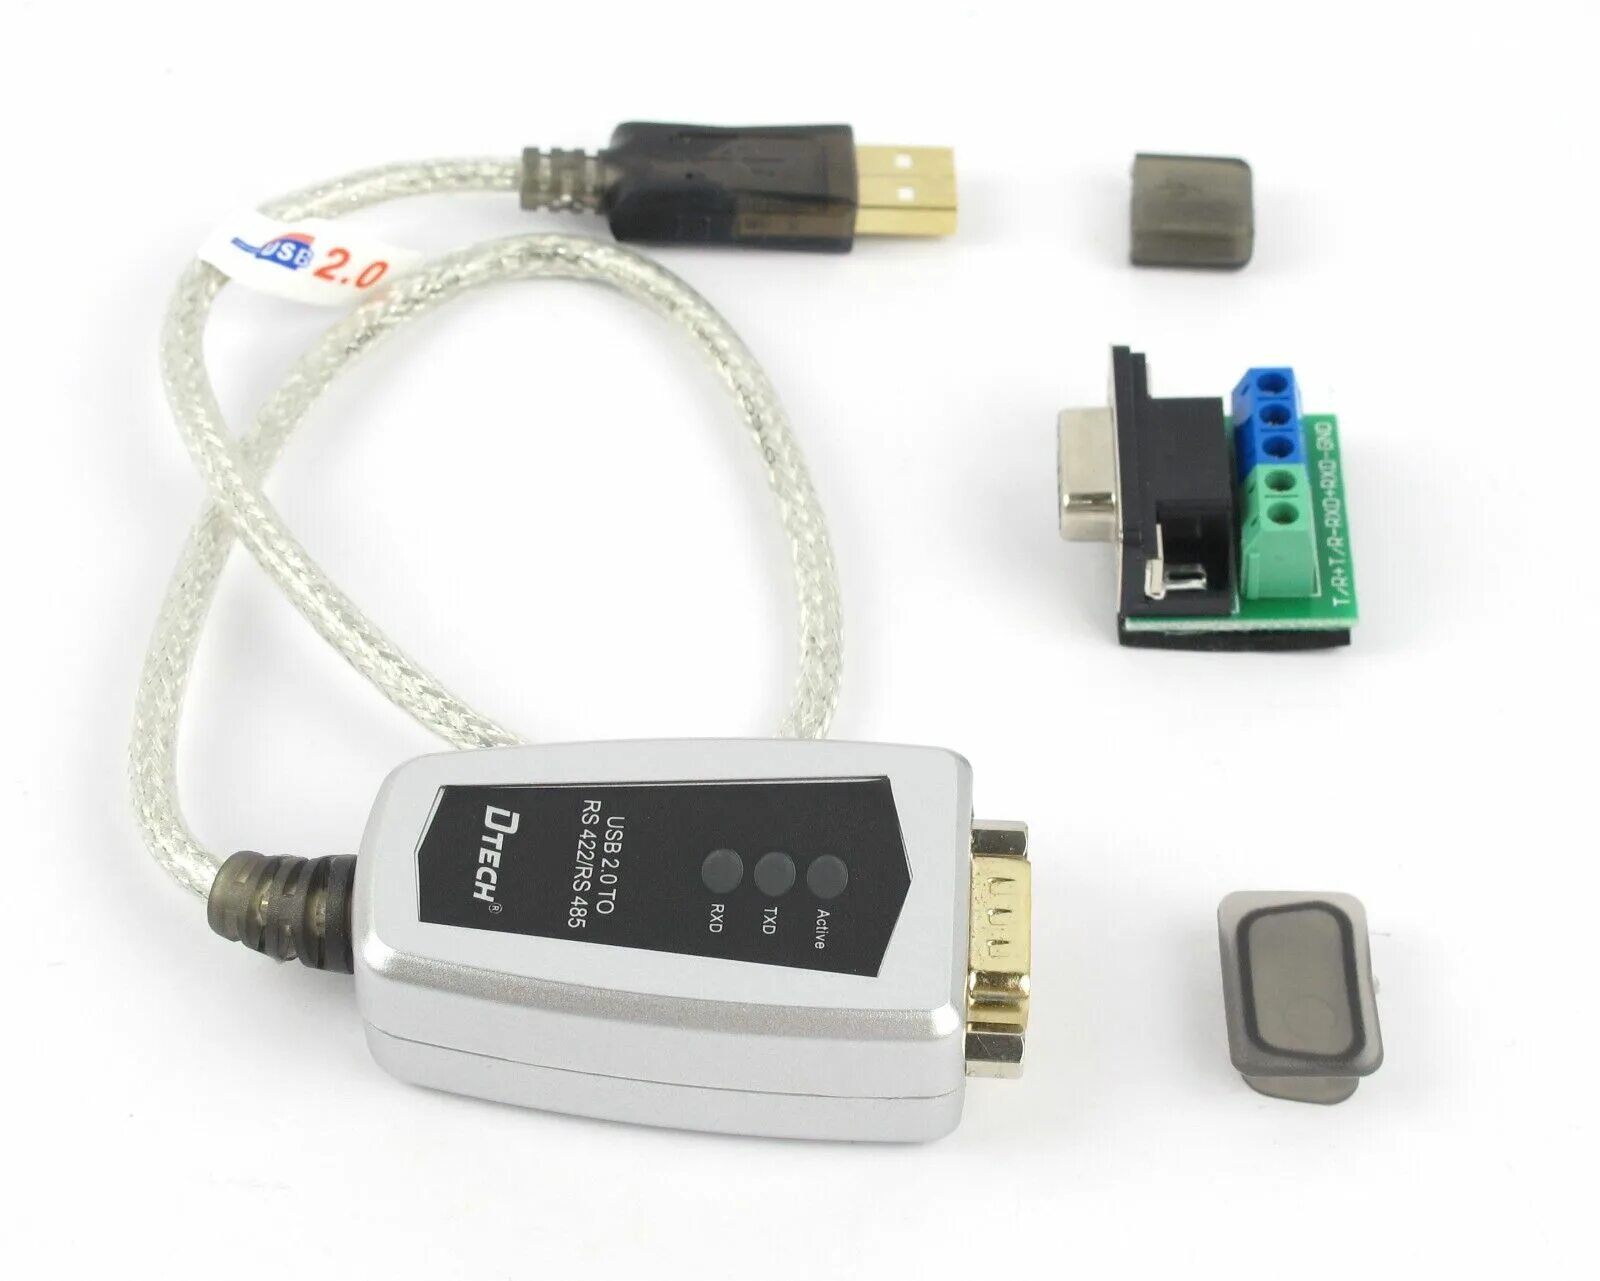 Конвертер rs 422 485. Преобразователь интерфейсов USB to rs422. Кабель конвертер USB-rs485. USB rs485 ch341. Адаптер USB rs485/rs422 Converter.